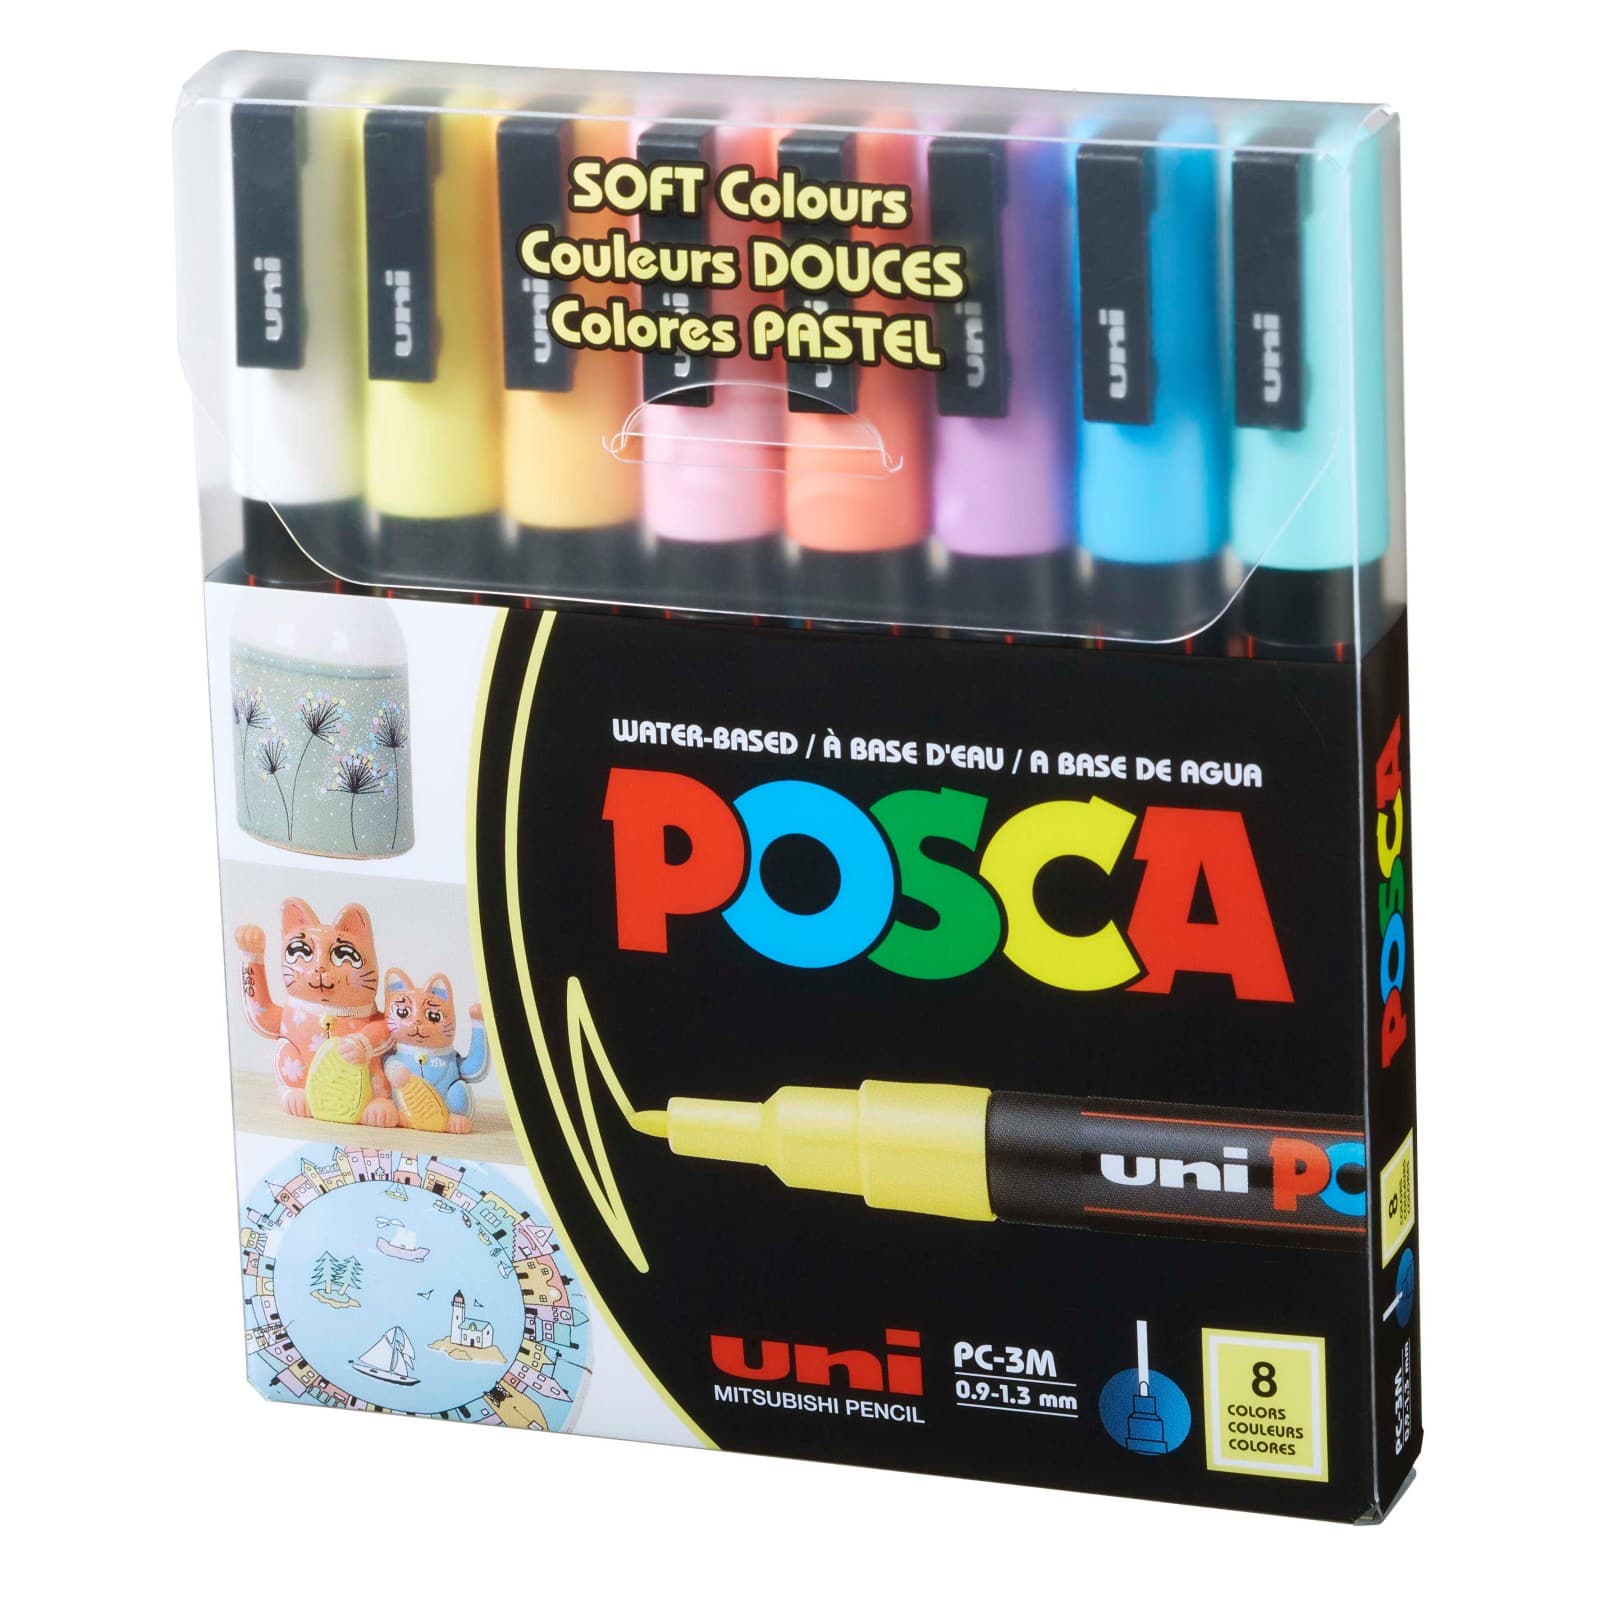 10 Packs: 8 ct. (80 total) Uni Posca PC-3M Fine Tip Soft Color Paint Markers